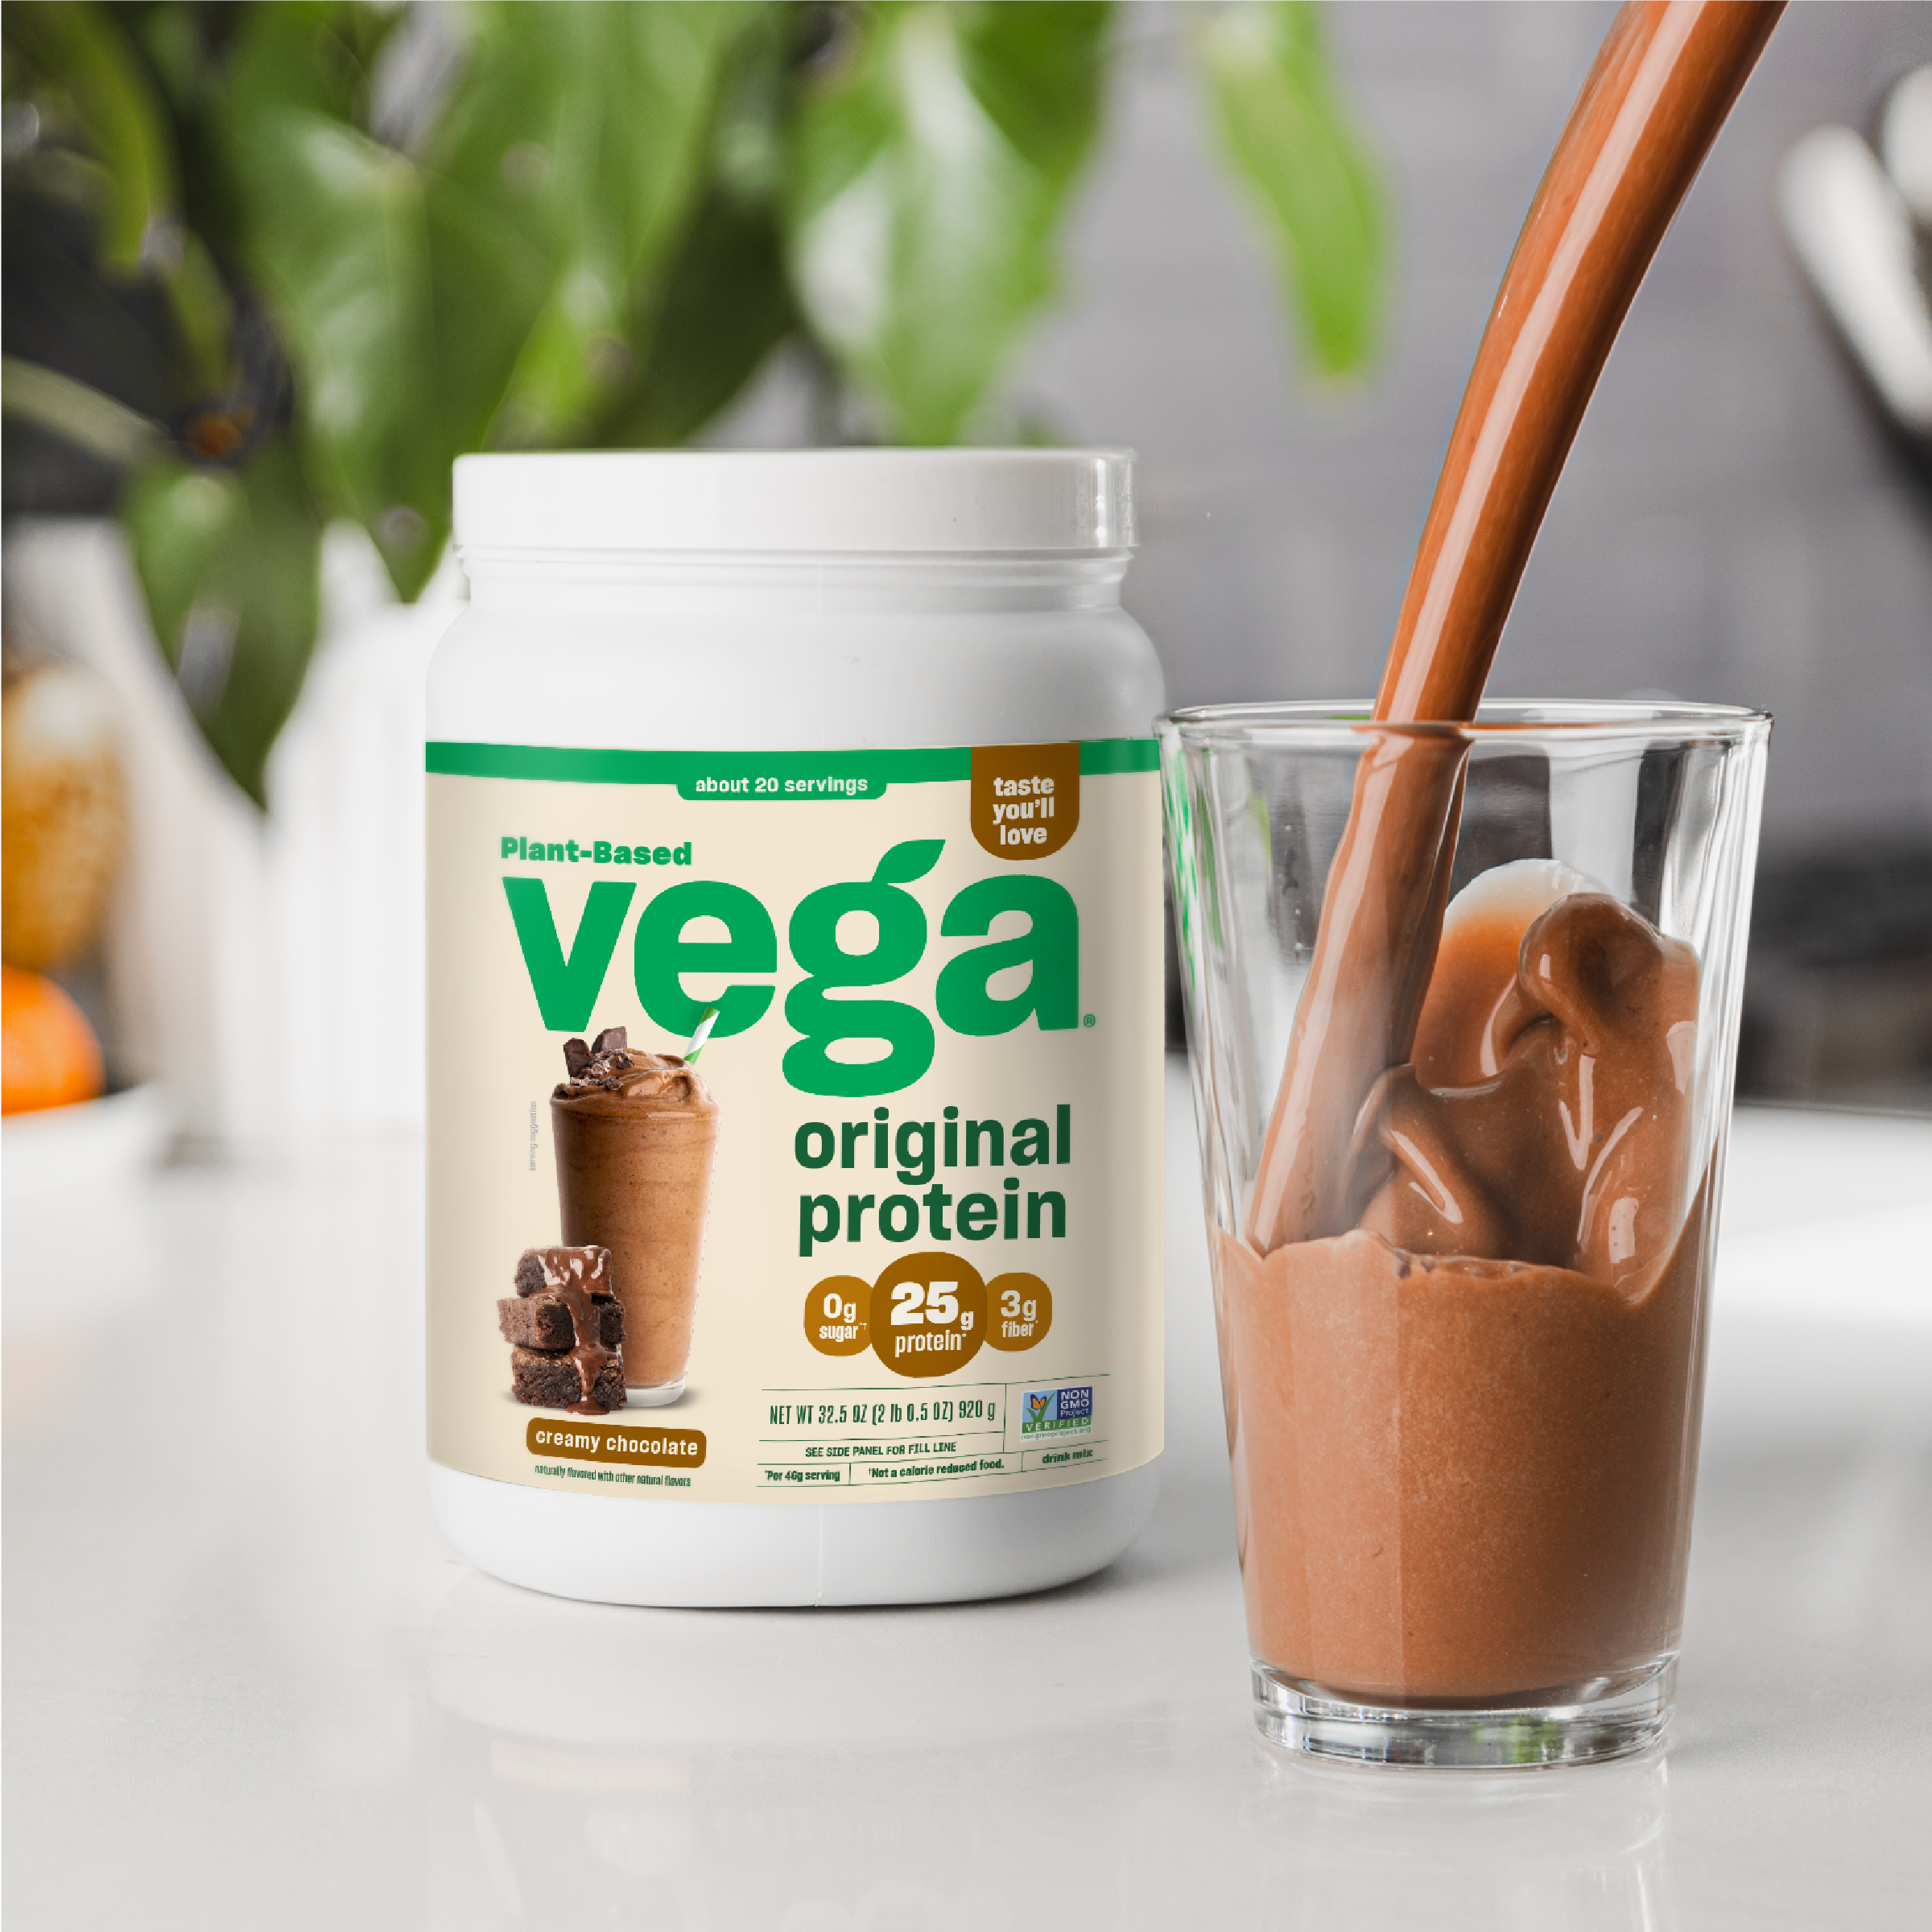 Vega One® Organic All-in-One Shake